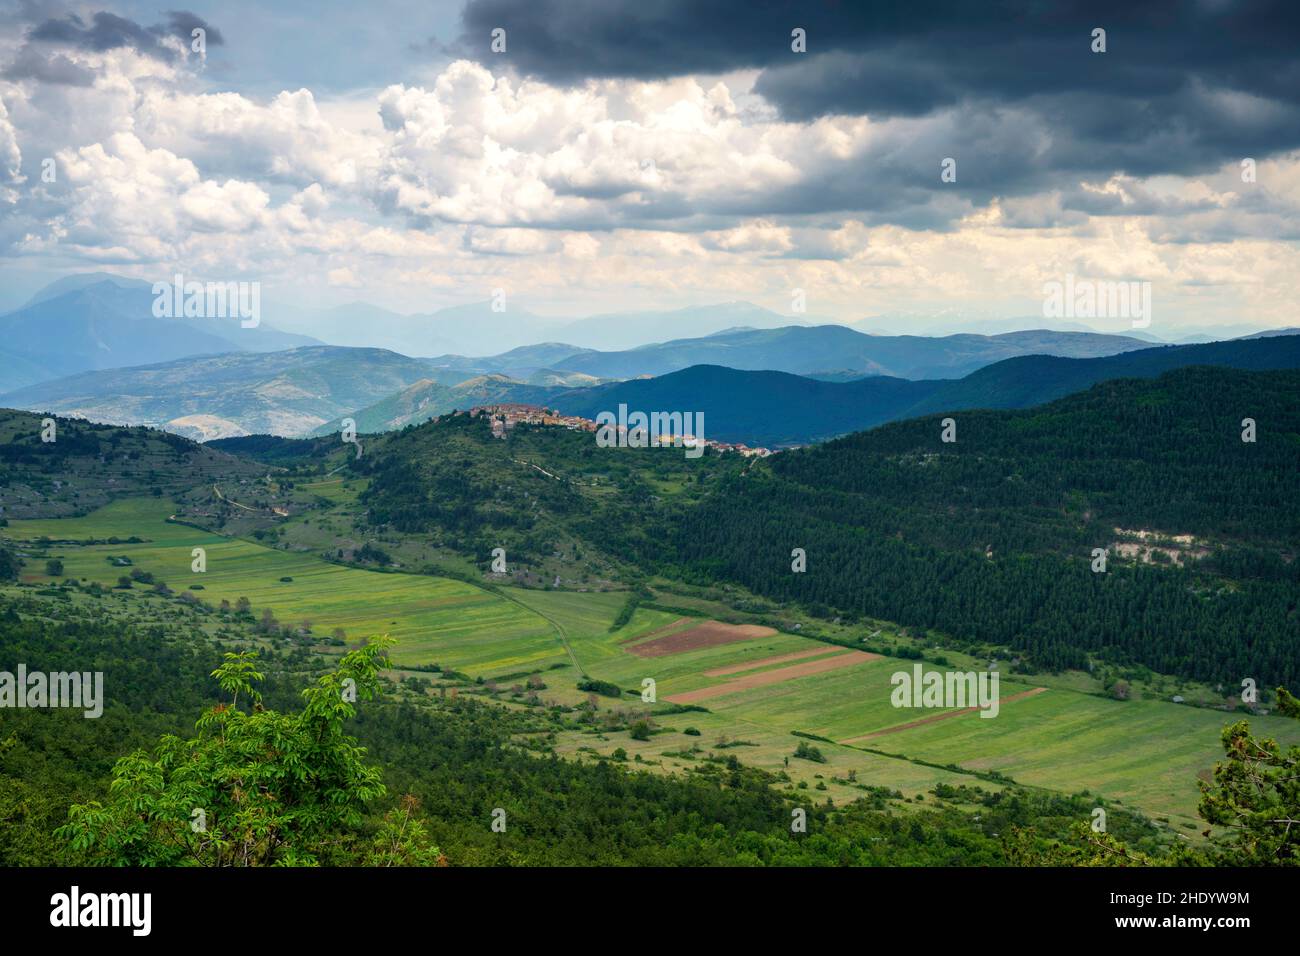 Mountain landscape at Gran Sasso Natural Park, in Abruzzo, Italy, L Aquila province, at springtime (June). View of Castelvecchio Calvisio, historic vi Stock Photo